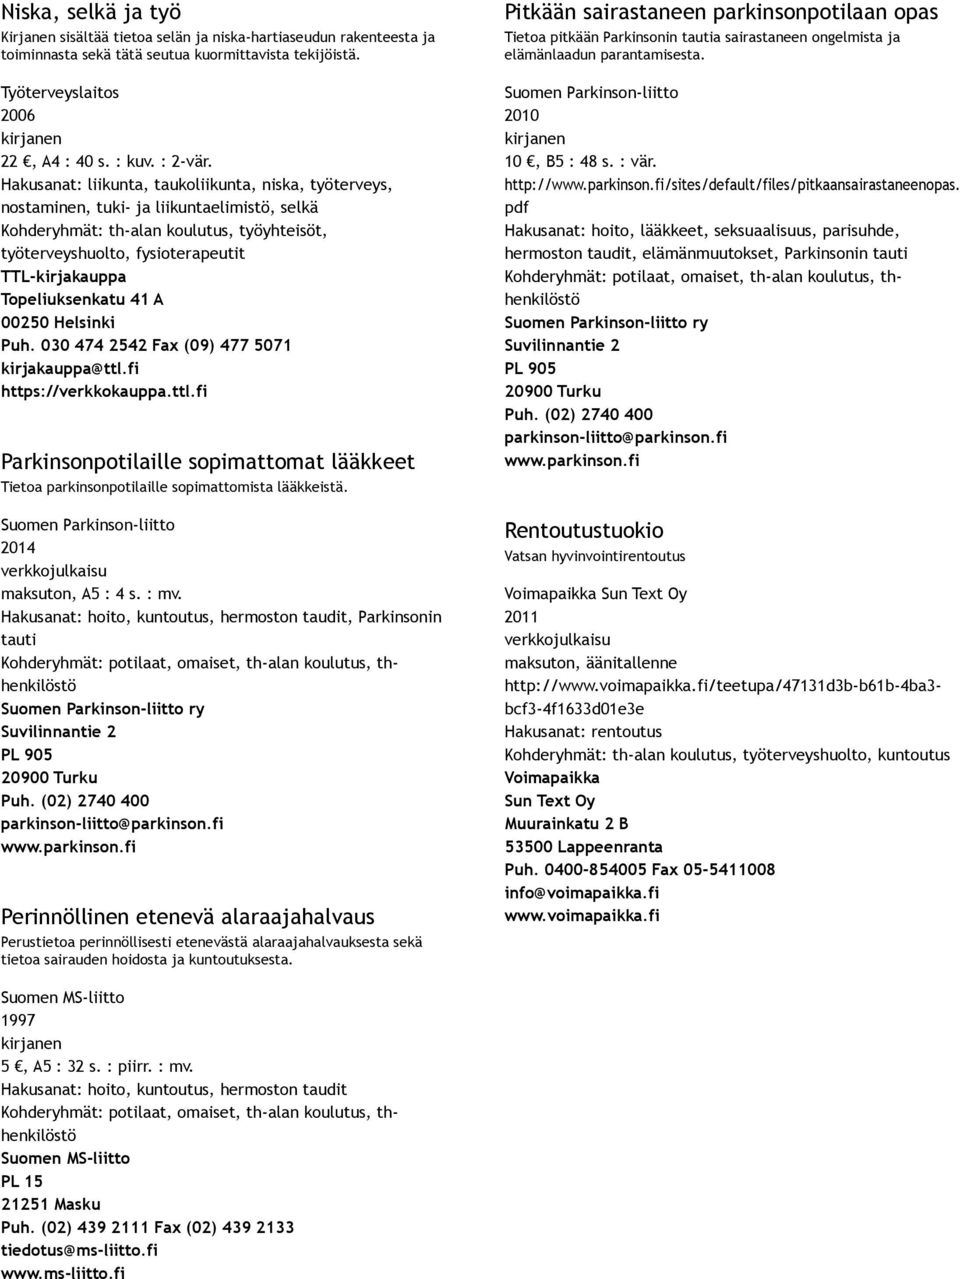 Topeliuksenkatu 41 A 00250 Helsinki Puh. 030 474 2542 Fax (09) 477 5071 kirjakauppa@ttl.fi https://verkkokauppa.ttl.fi Parkinsonpotilaille sopimattomat lääkkeet Tietoa parkinsonpotilaille sopimattomista lääkkeistä.